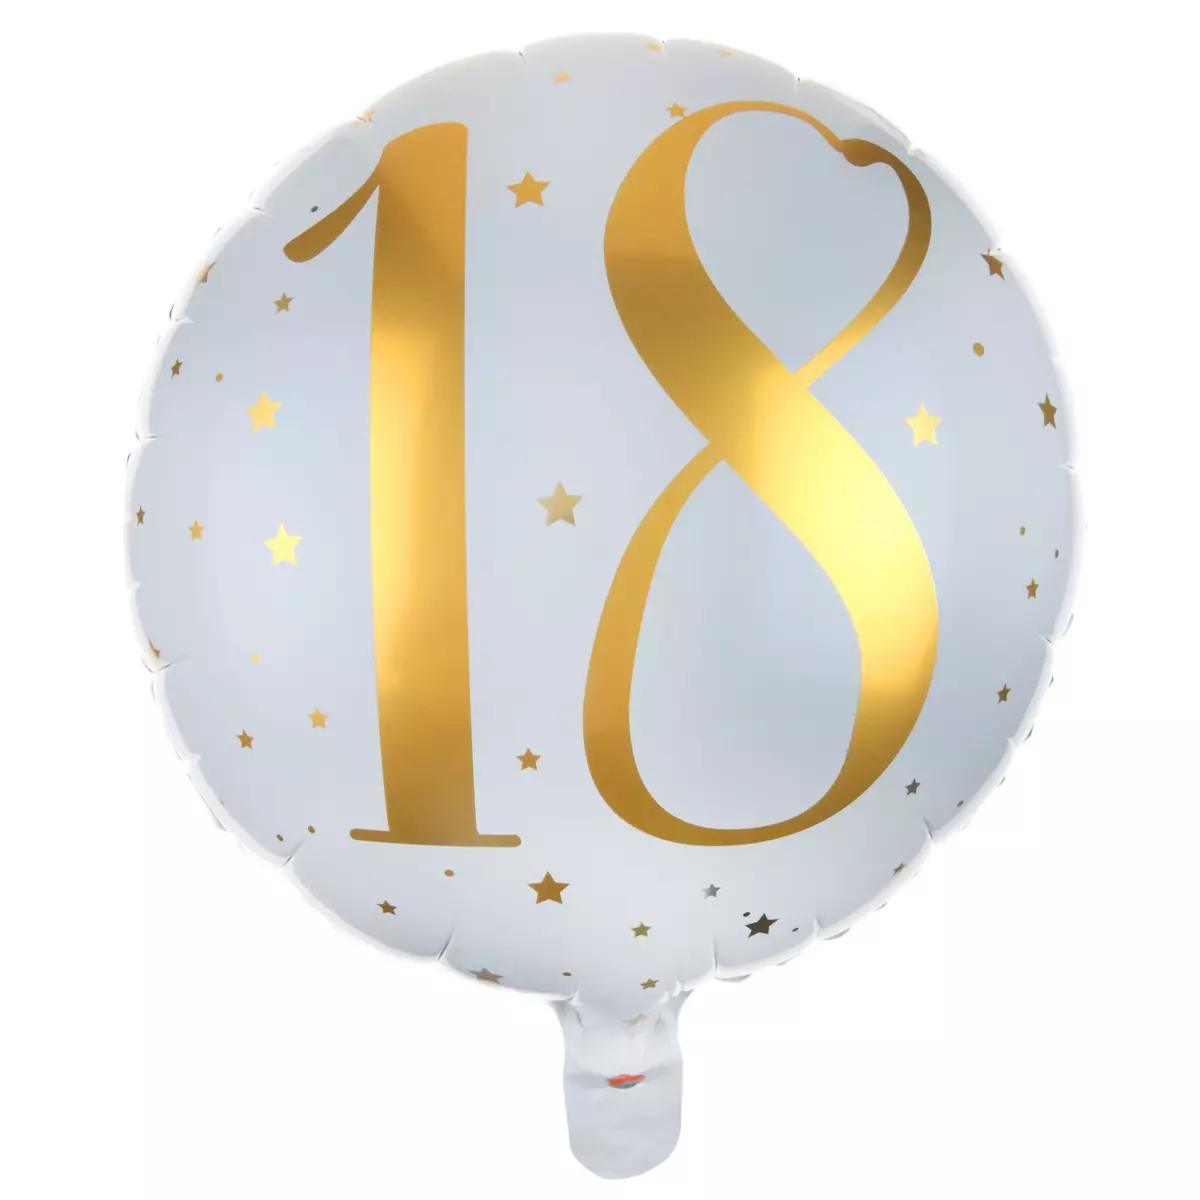  Ballon Aluminium 18 ans Joyeux Anniversaire Blanc et Or